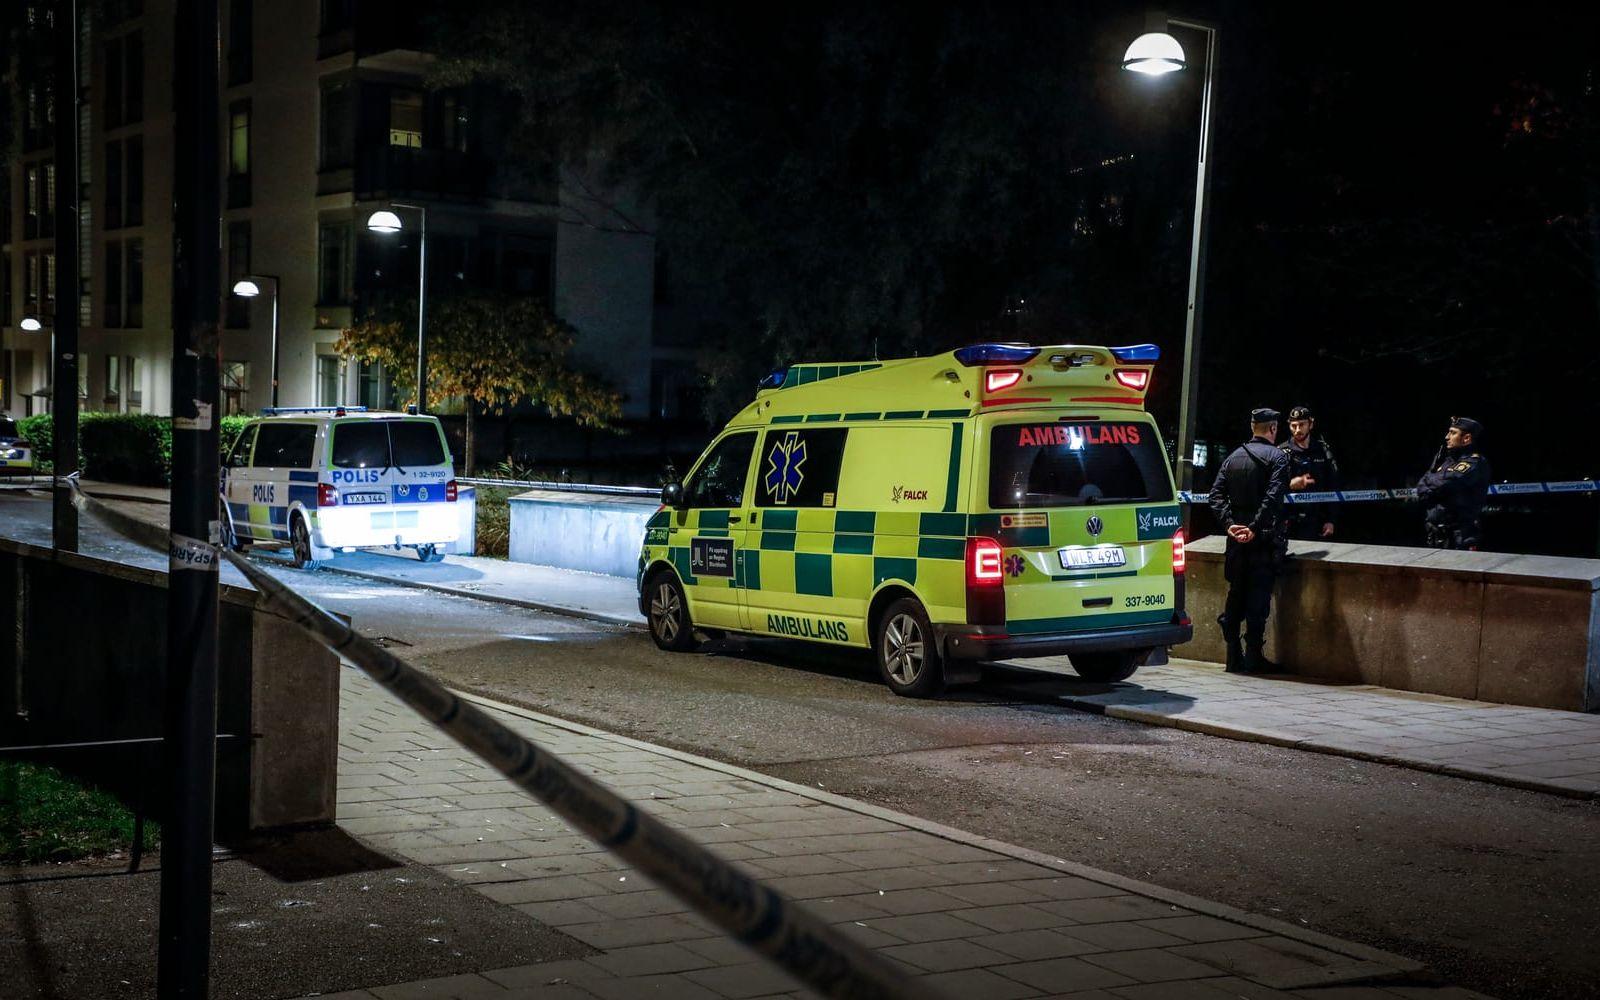 Det var den 19-åriga rapparen Einár som sköts i Stockholm under torsdagskvällen. Hans liv gick inte att rädda. 